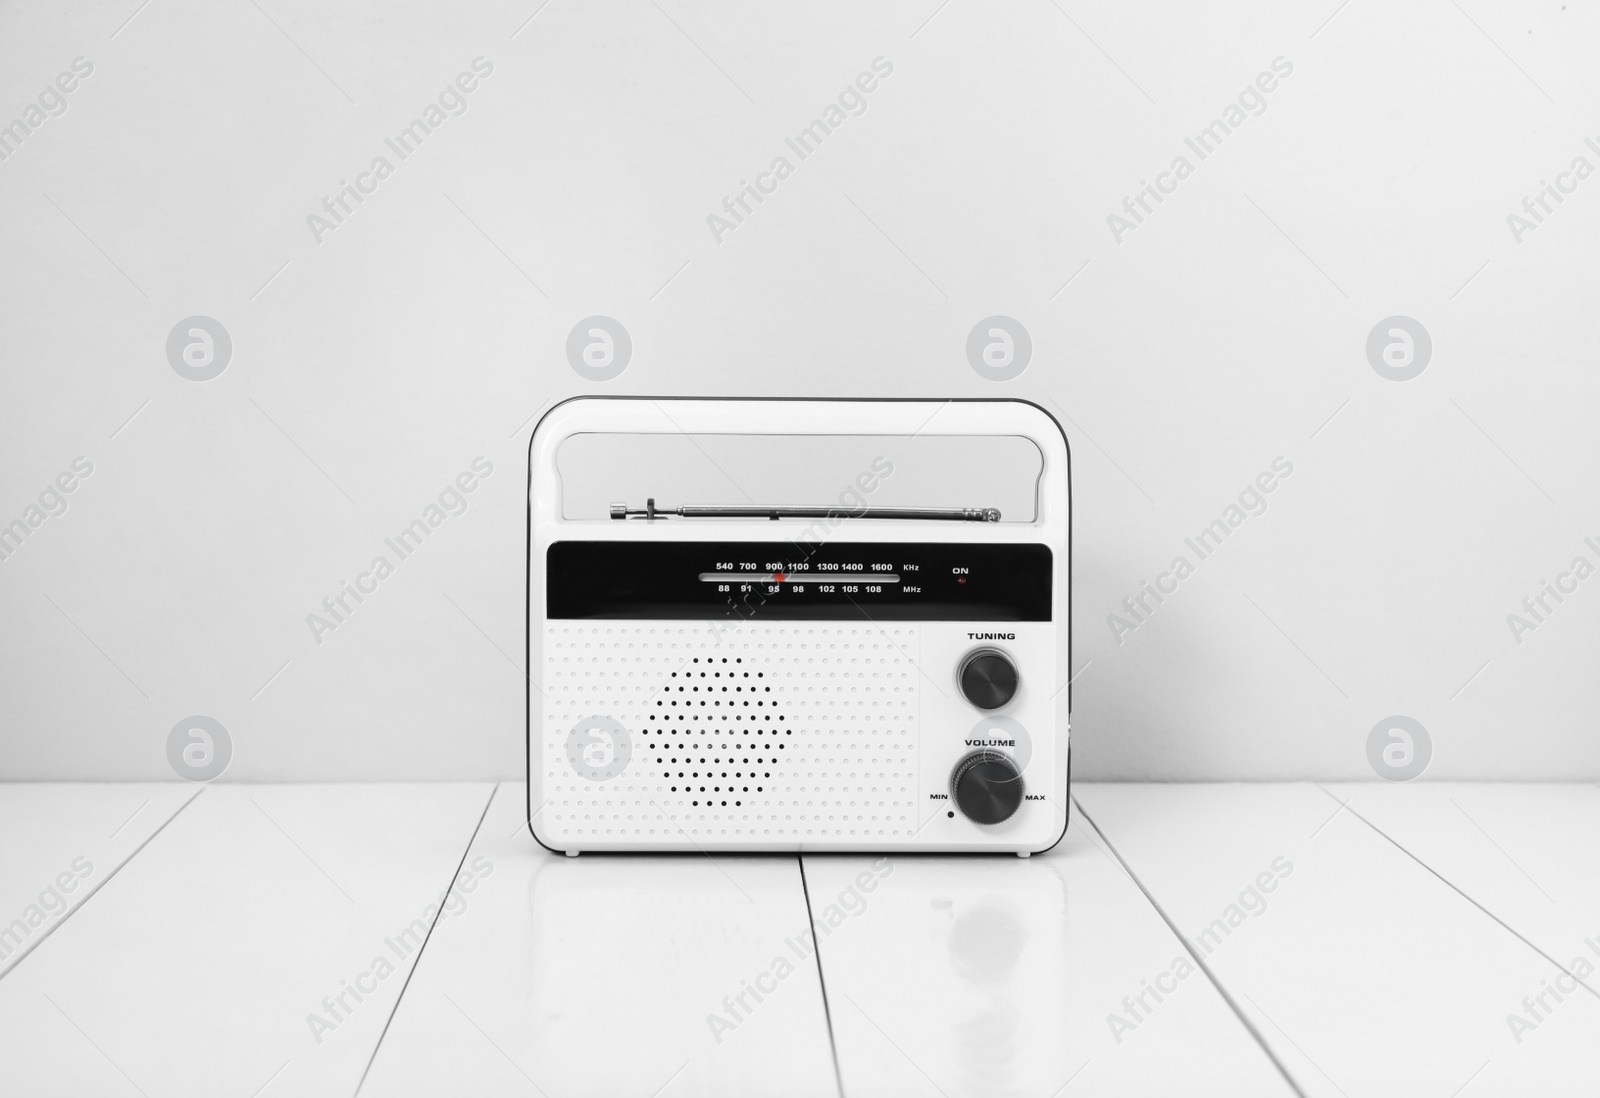 Photo of Retro radio receiver on white wooden table